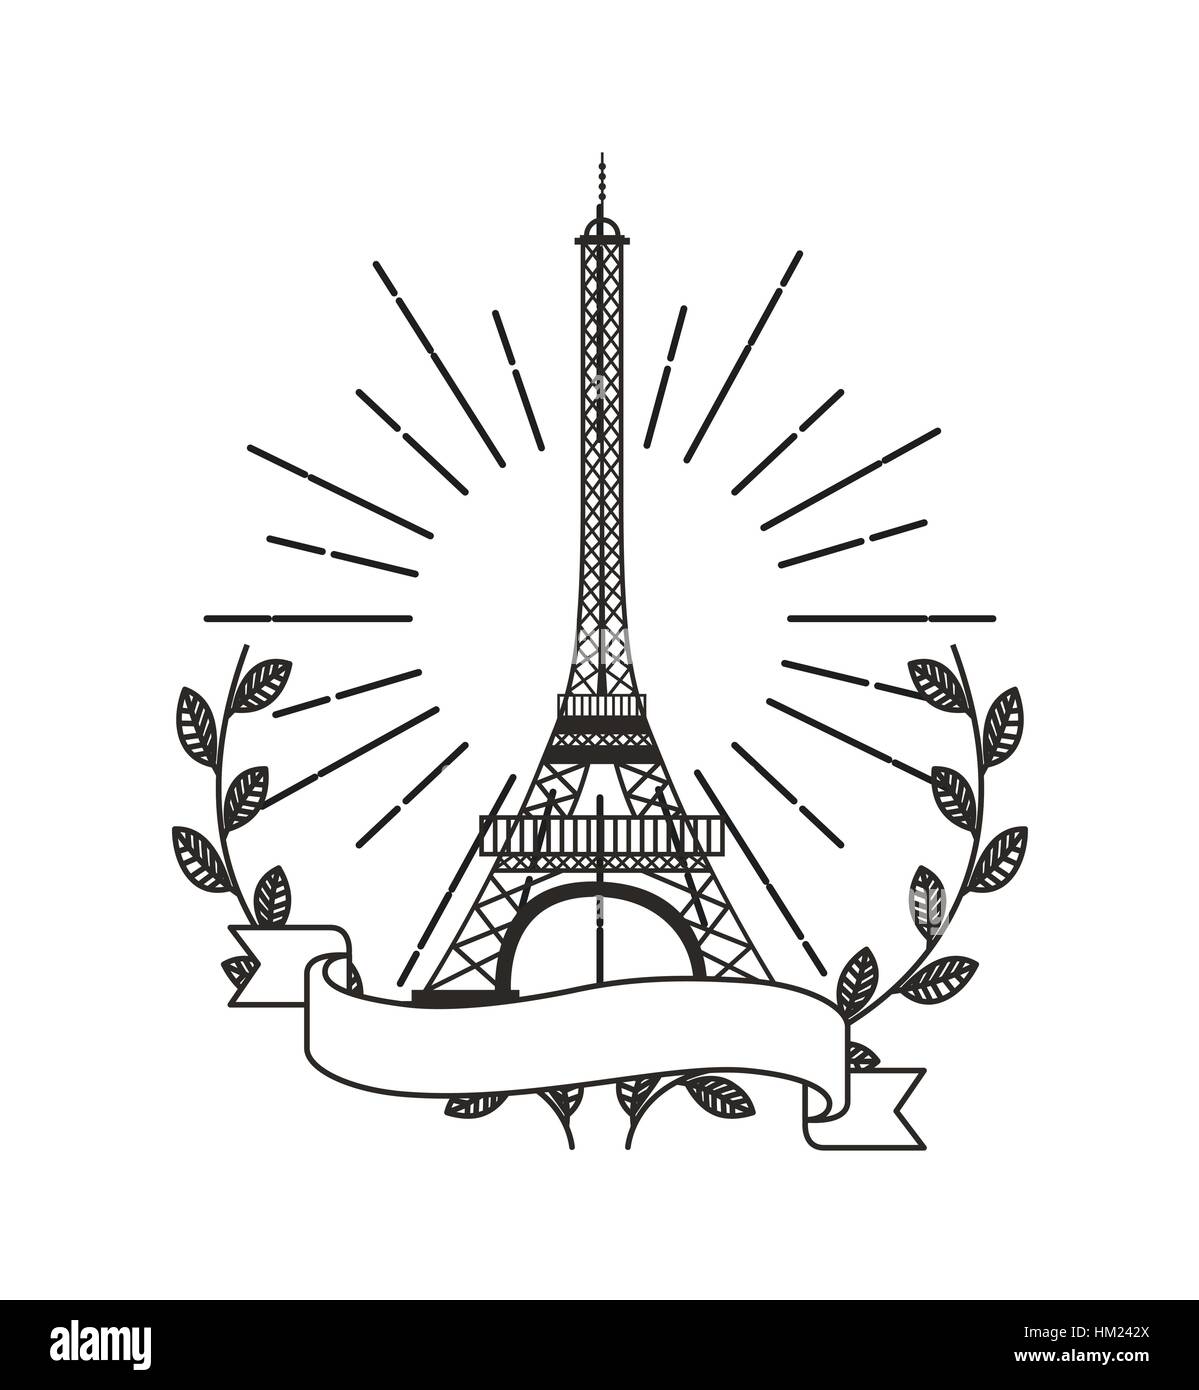 Eiffel Turm Symbol mit dekorativen Kranz von verlässt und Band auf weißem Hintergrund. Vektor-illustration Stock Vektor